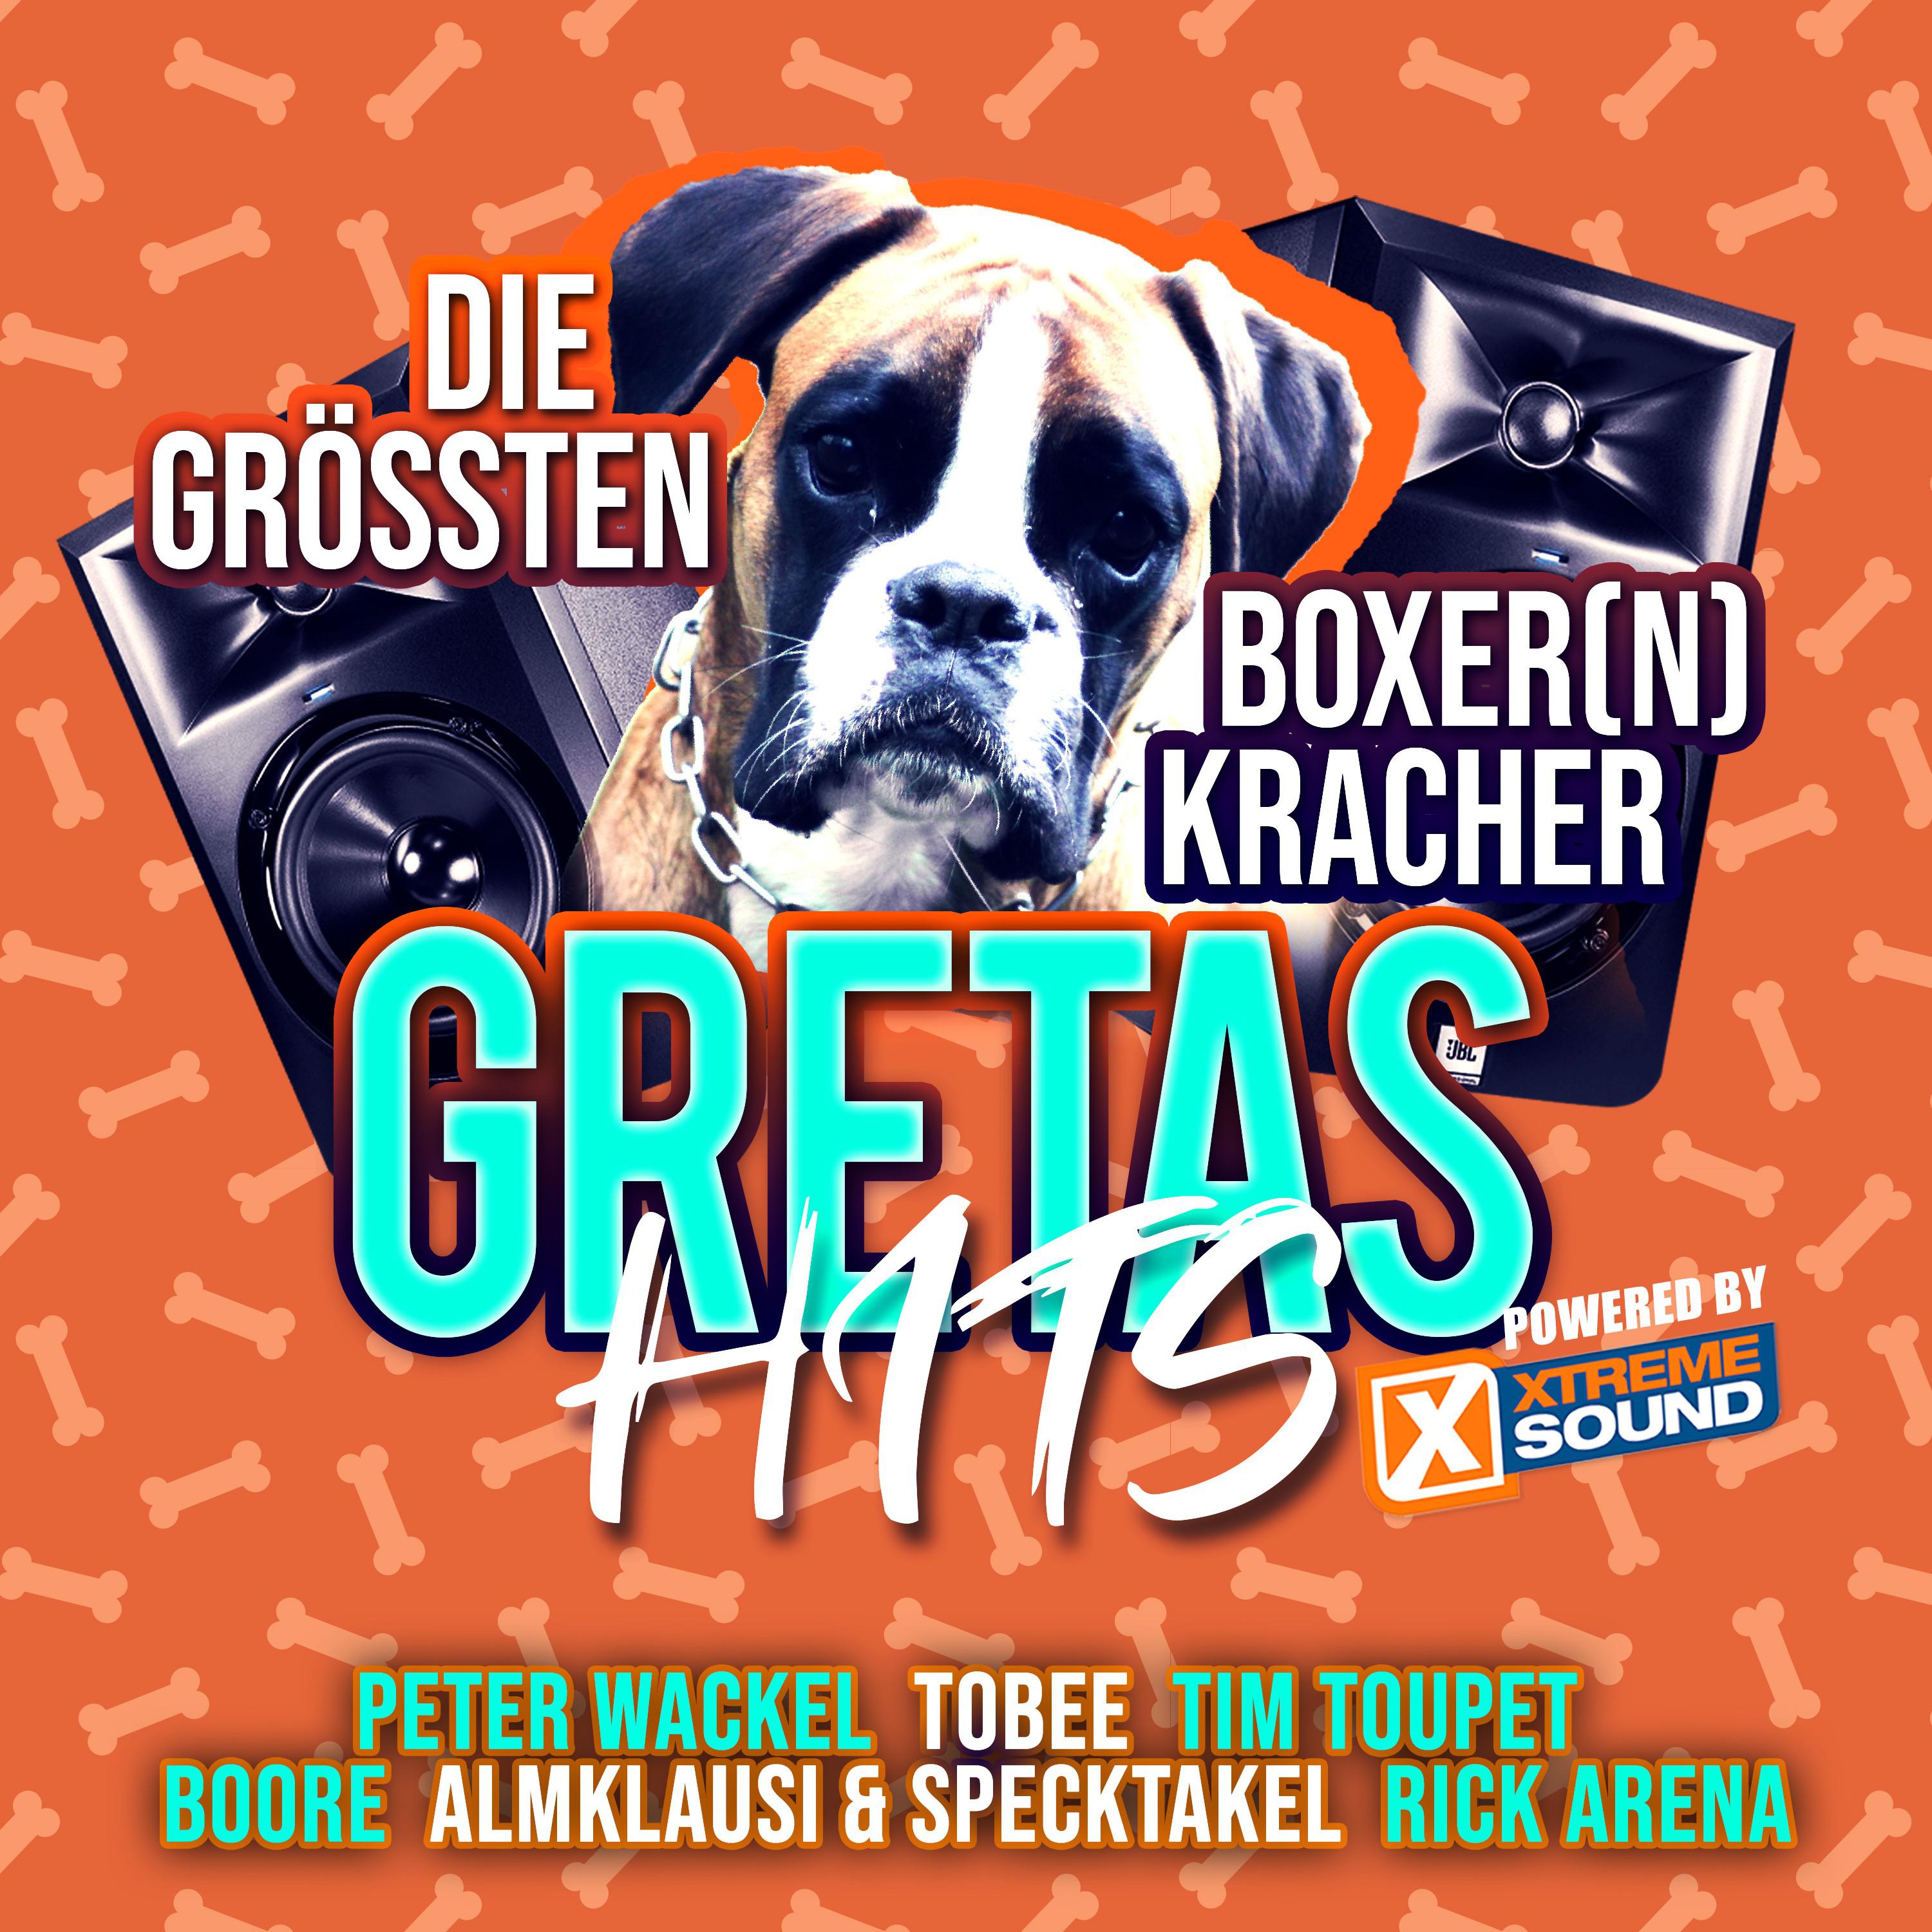 Gretas Hits  Die gr ssten Boxer n Kracher Powered by Xtreme Sound